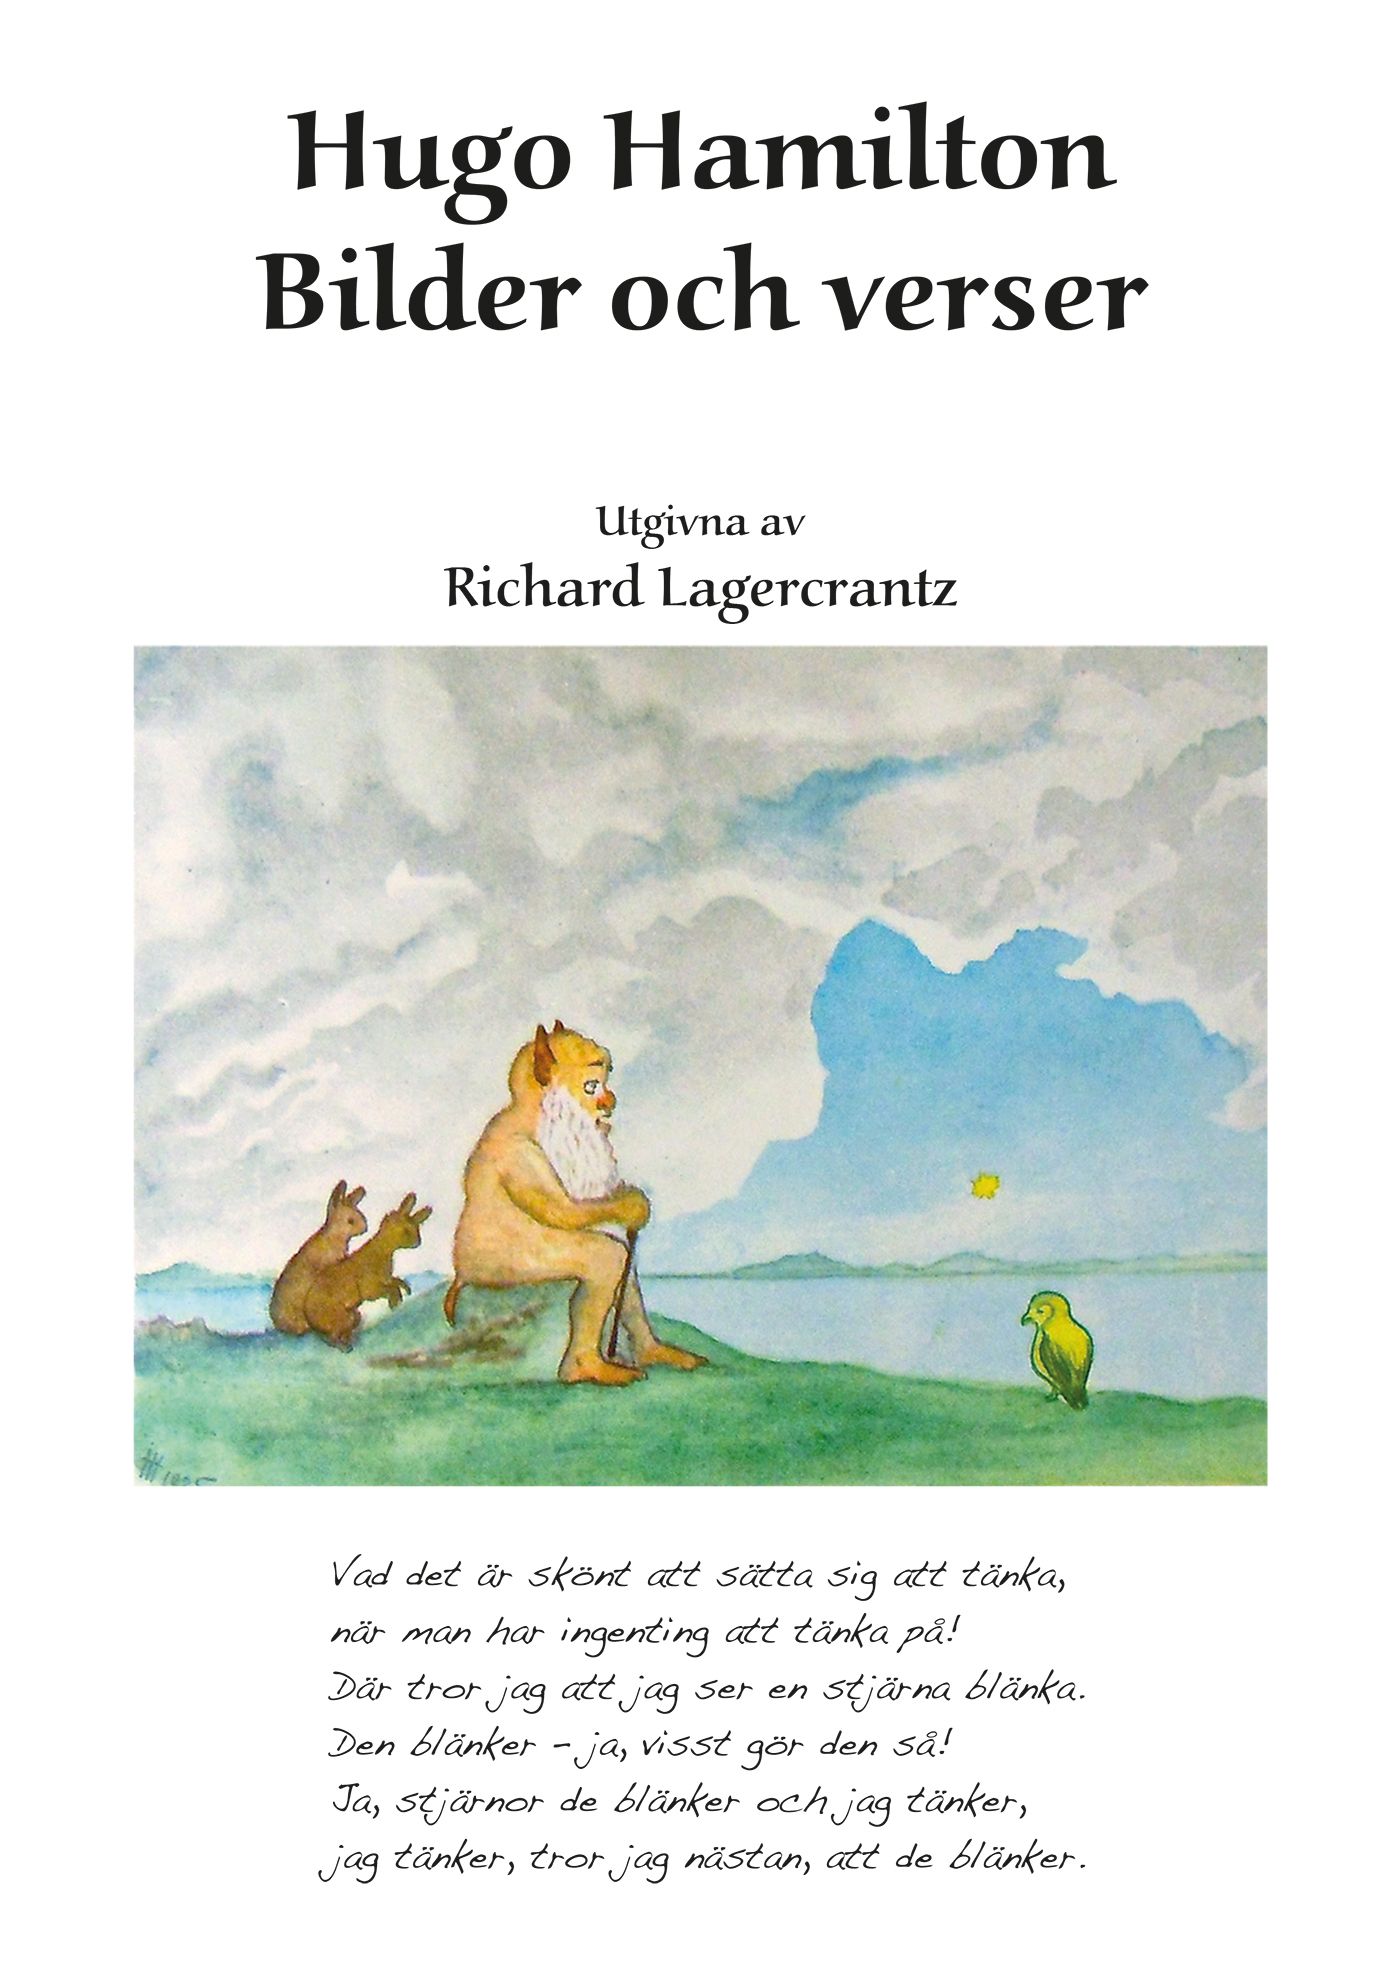 Hugo Hamilton: Bilder och verser, e-bok av Richard Lagercrantz